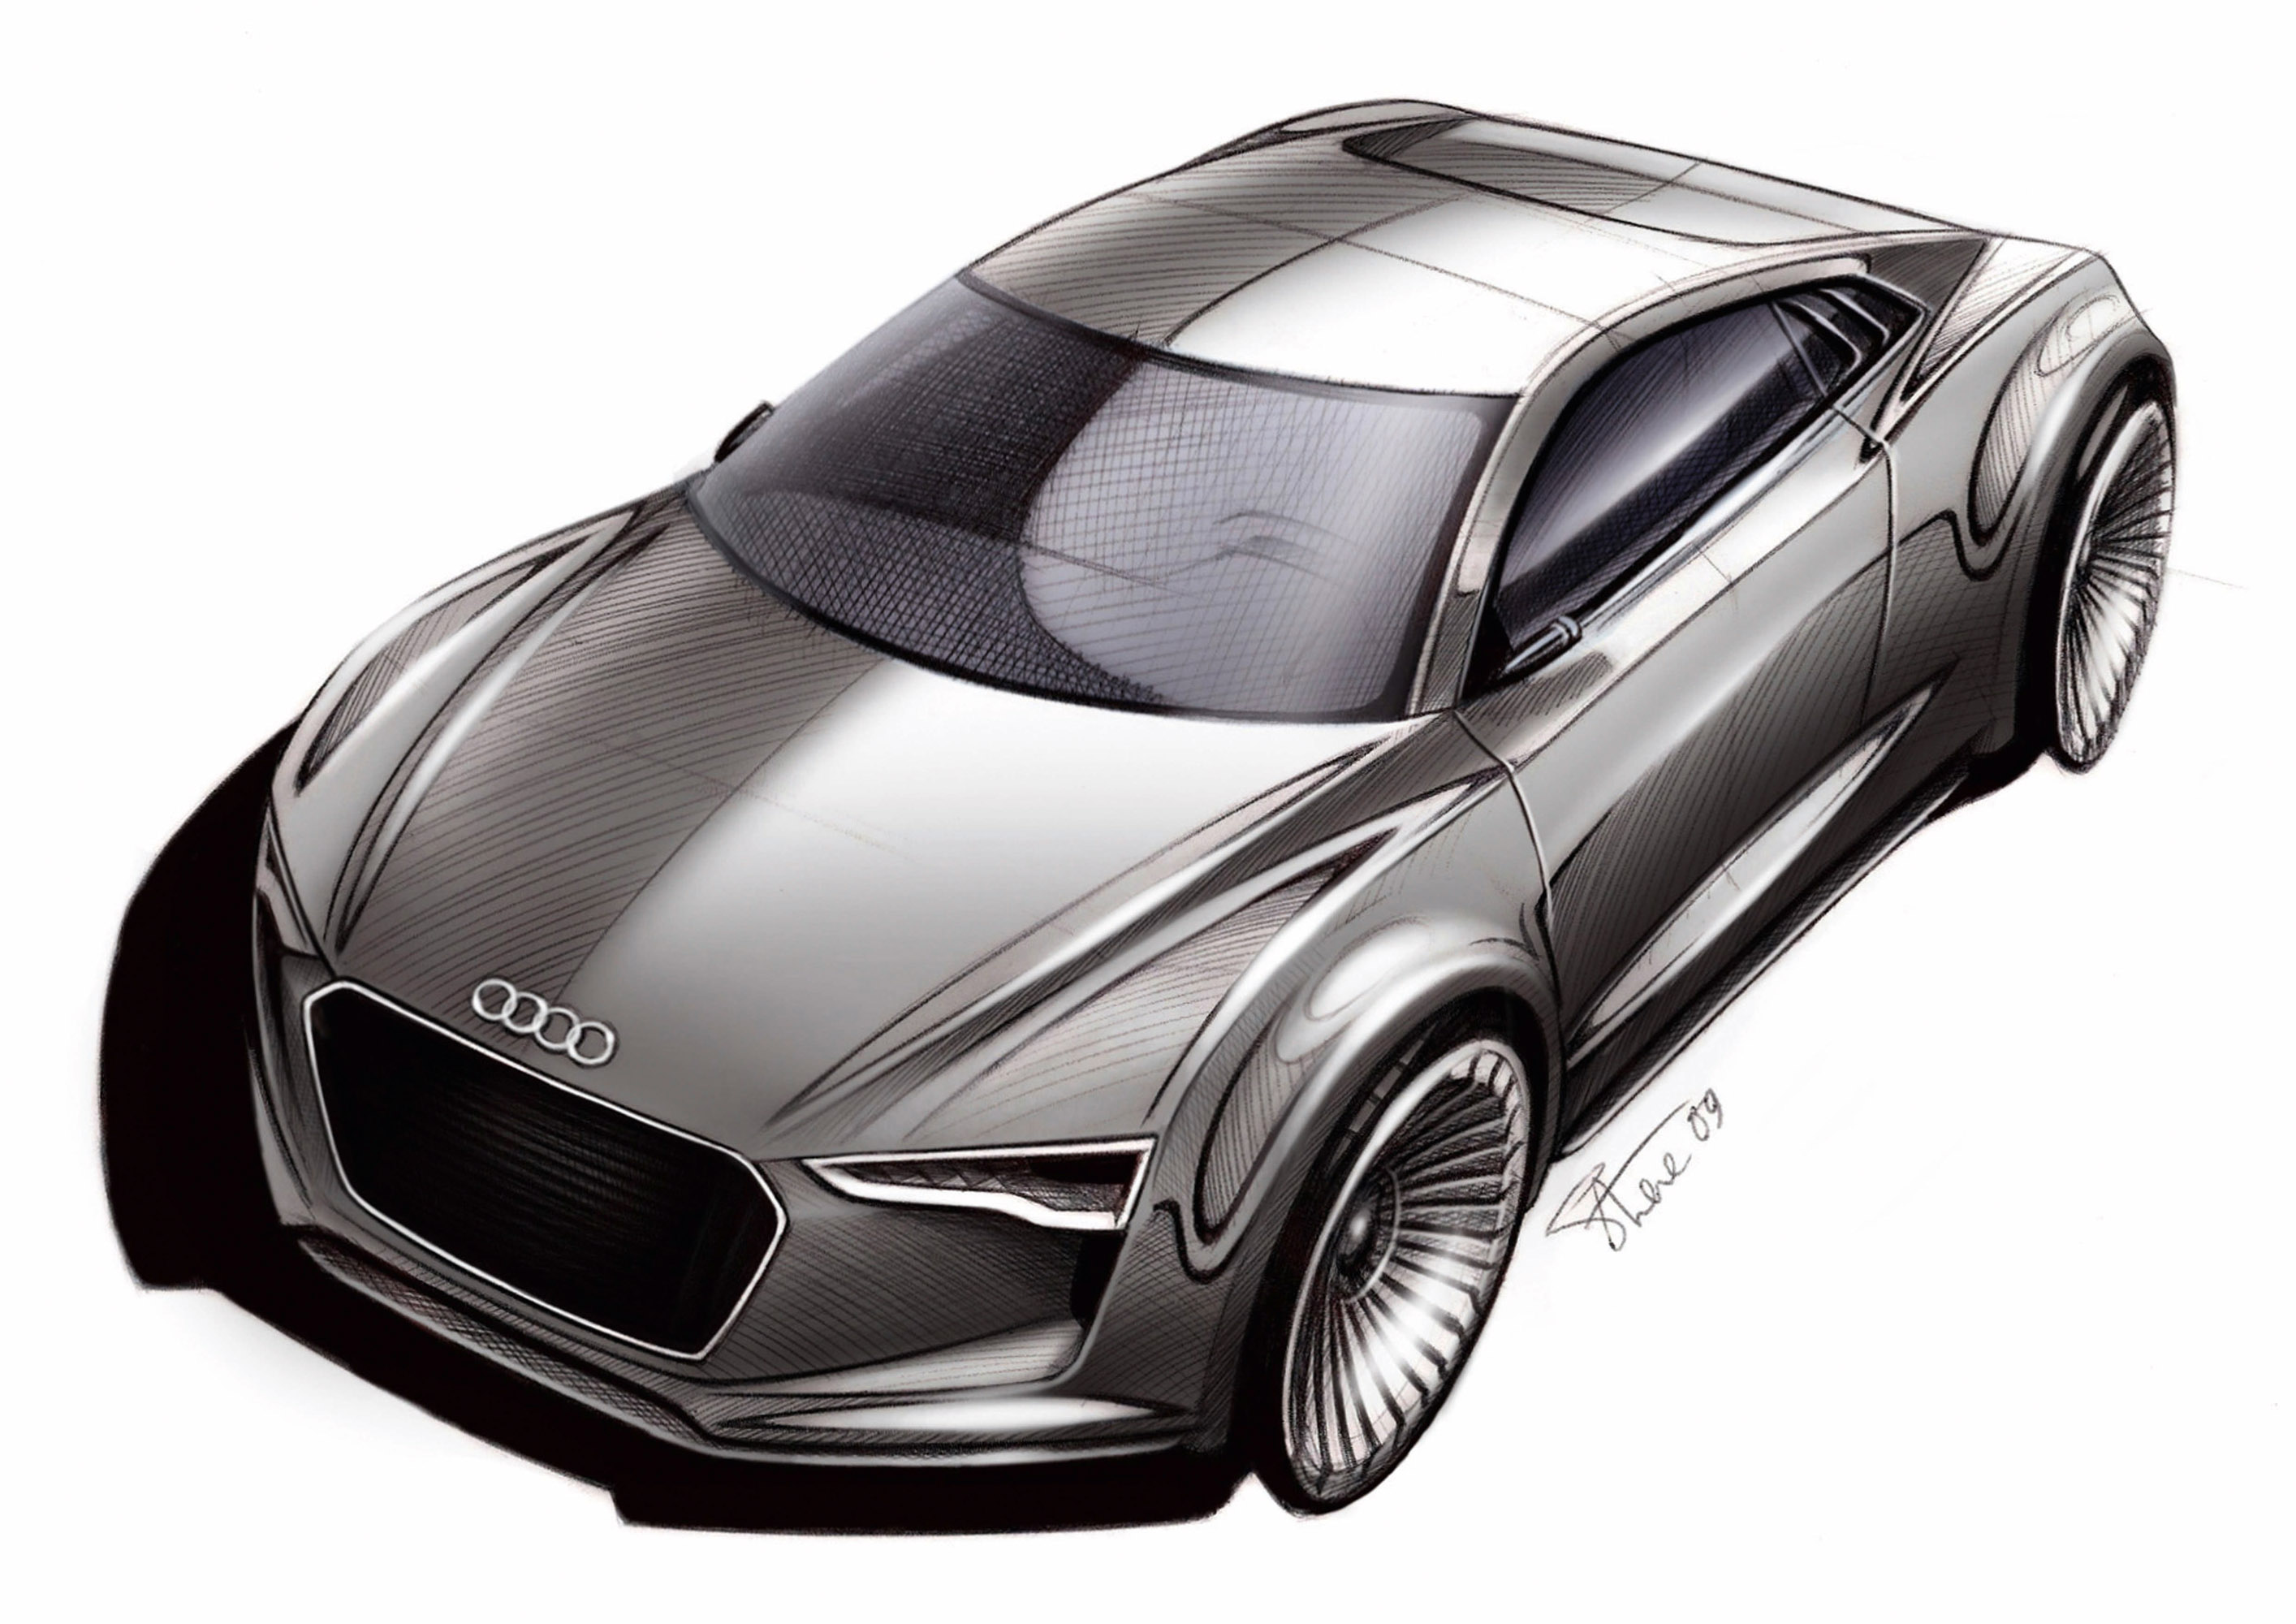 Audi e-tron Detroit Showcar